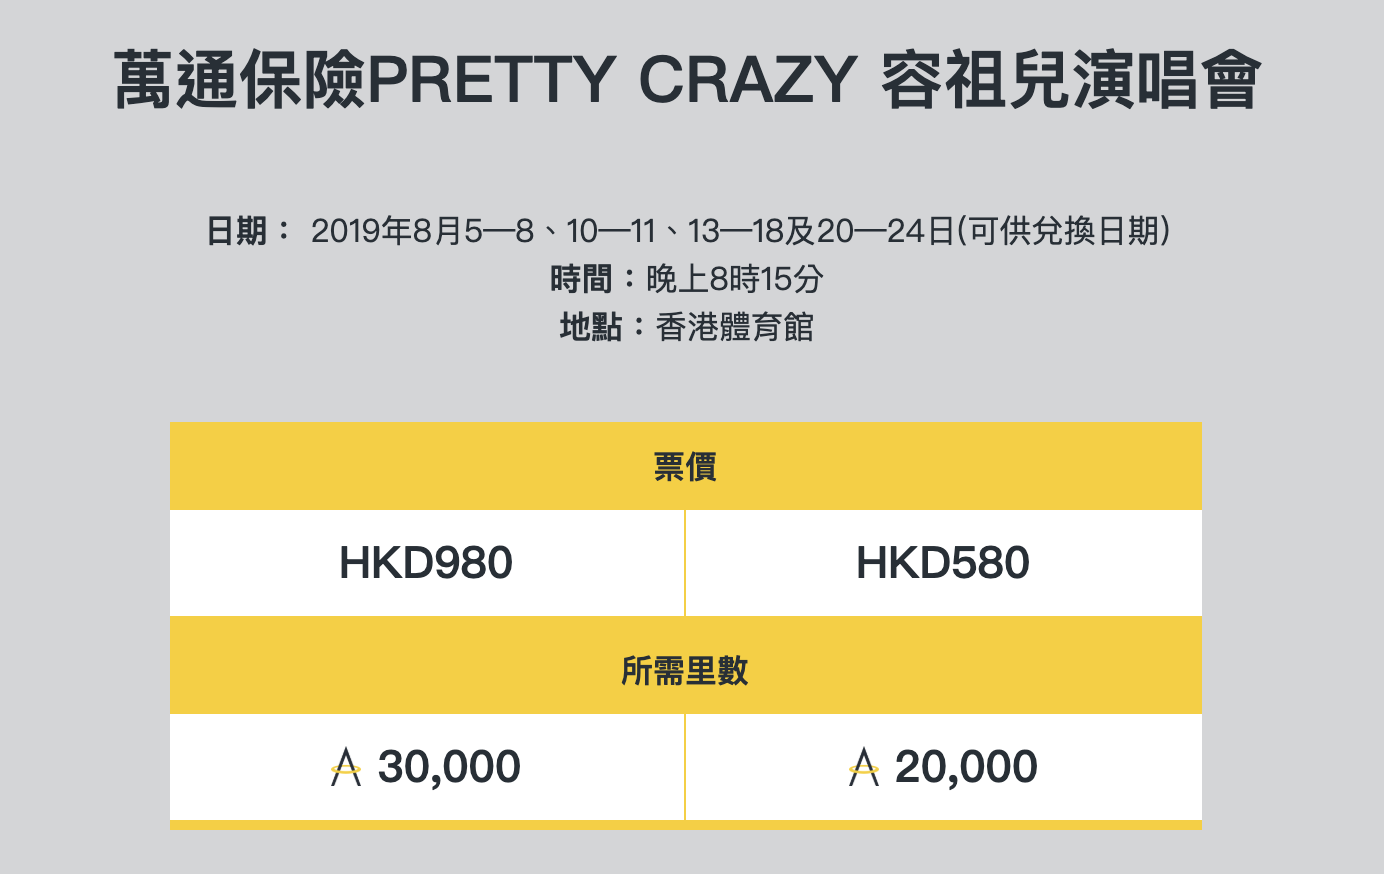 容祖兒演唱會2019 Asia Miles可以兌換|信用卡由建行獲得優先訂票！Pretty Crazy Joey Yung Concert香港站